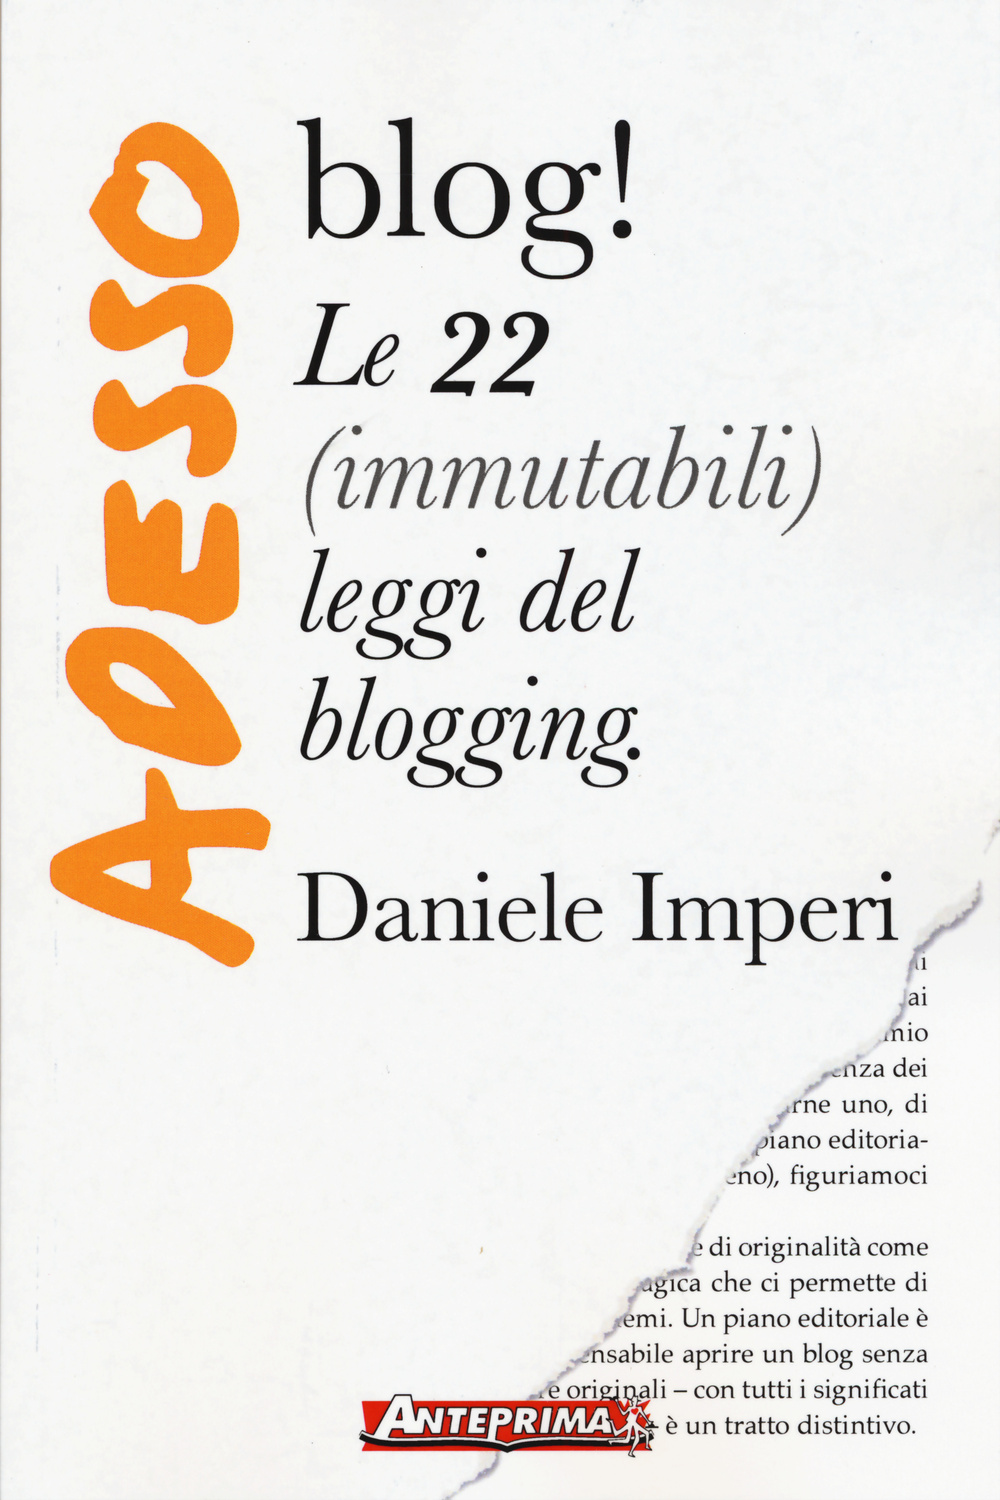 Image of Adesso blog! Le 22 (immutabili) leggi del blogging